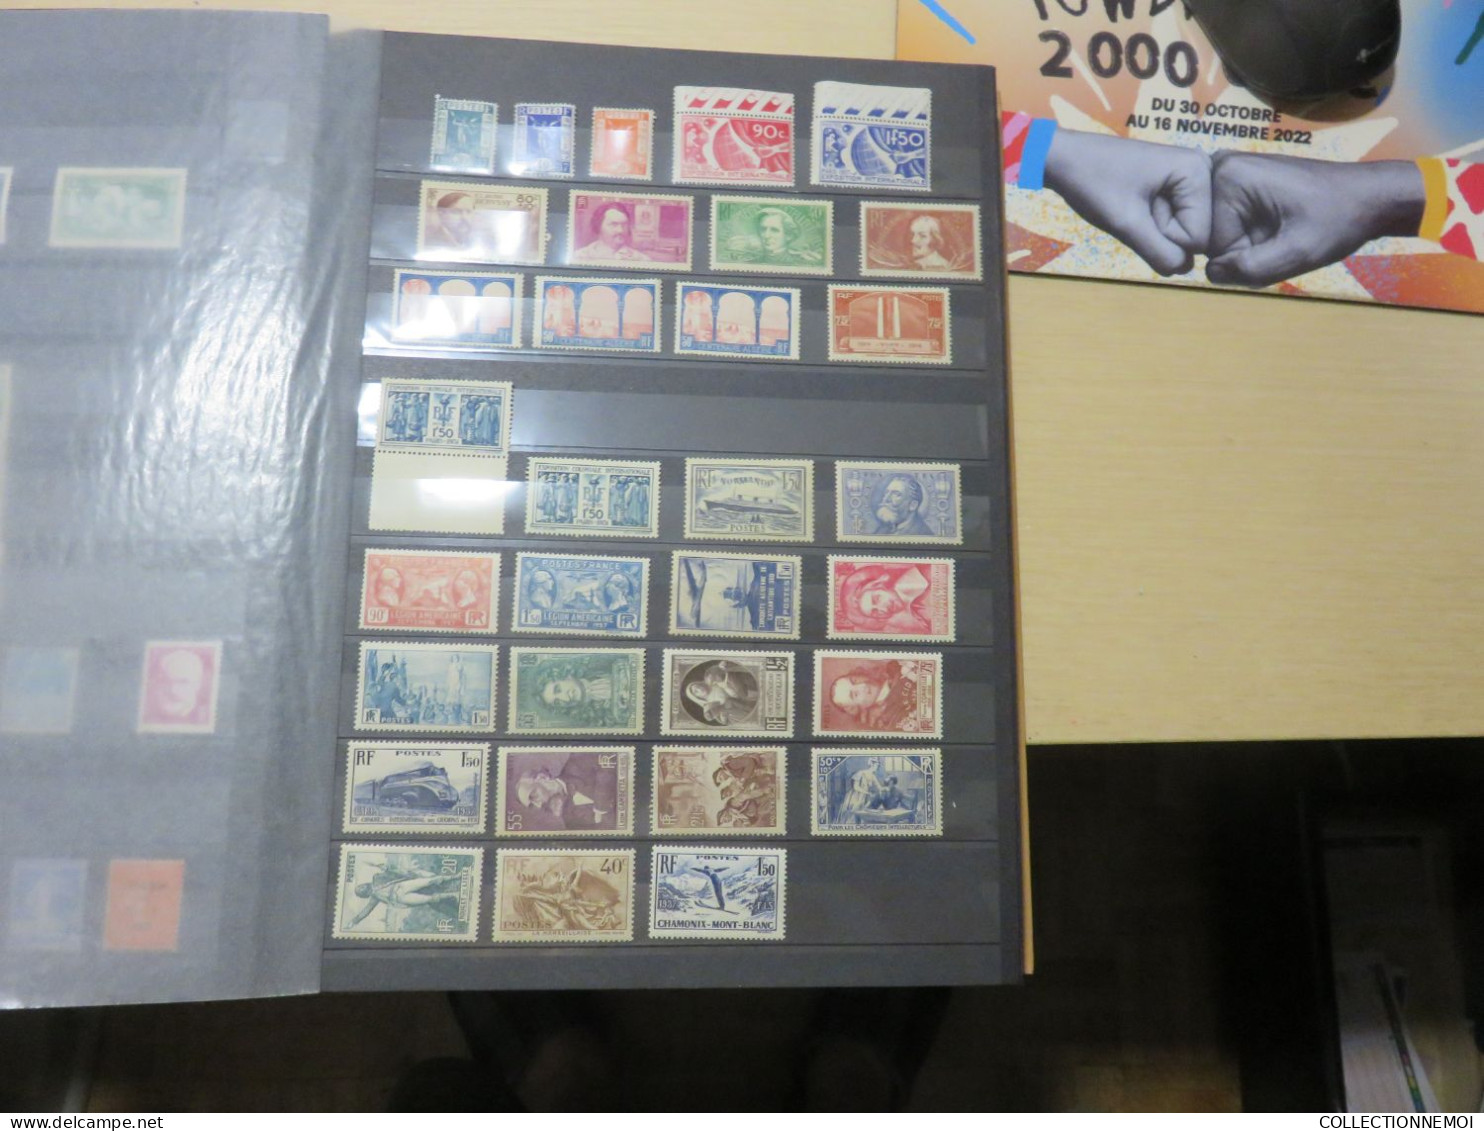 lot de timbres de FRANCE,,surtout lire description ,,, à vous de voir si encherir ou pas ,, 1er partie sans charniere